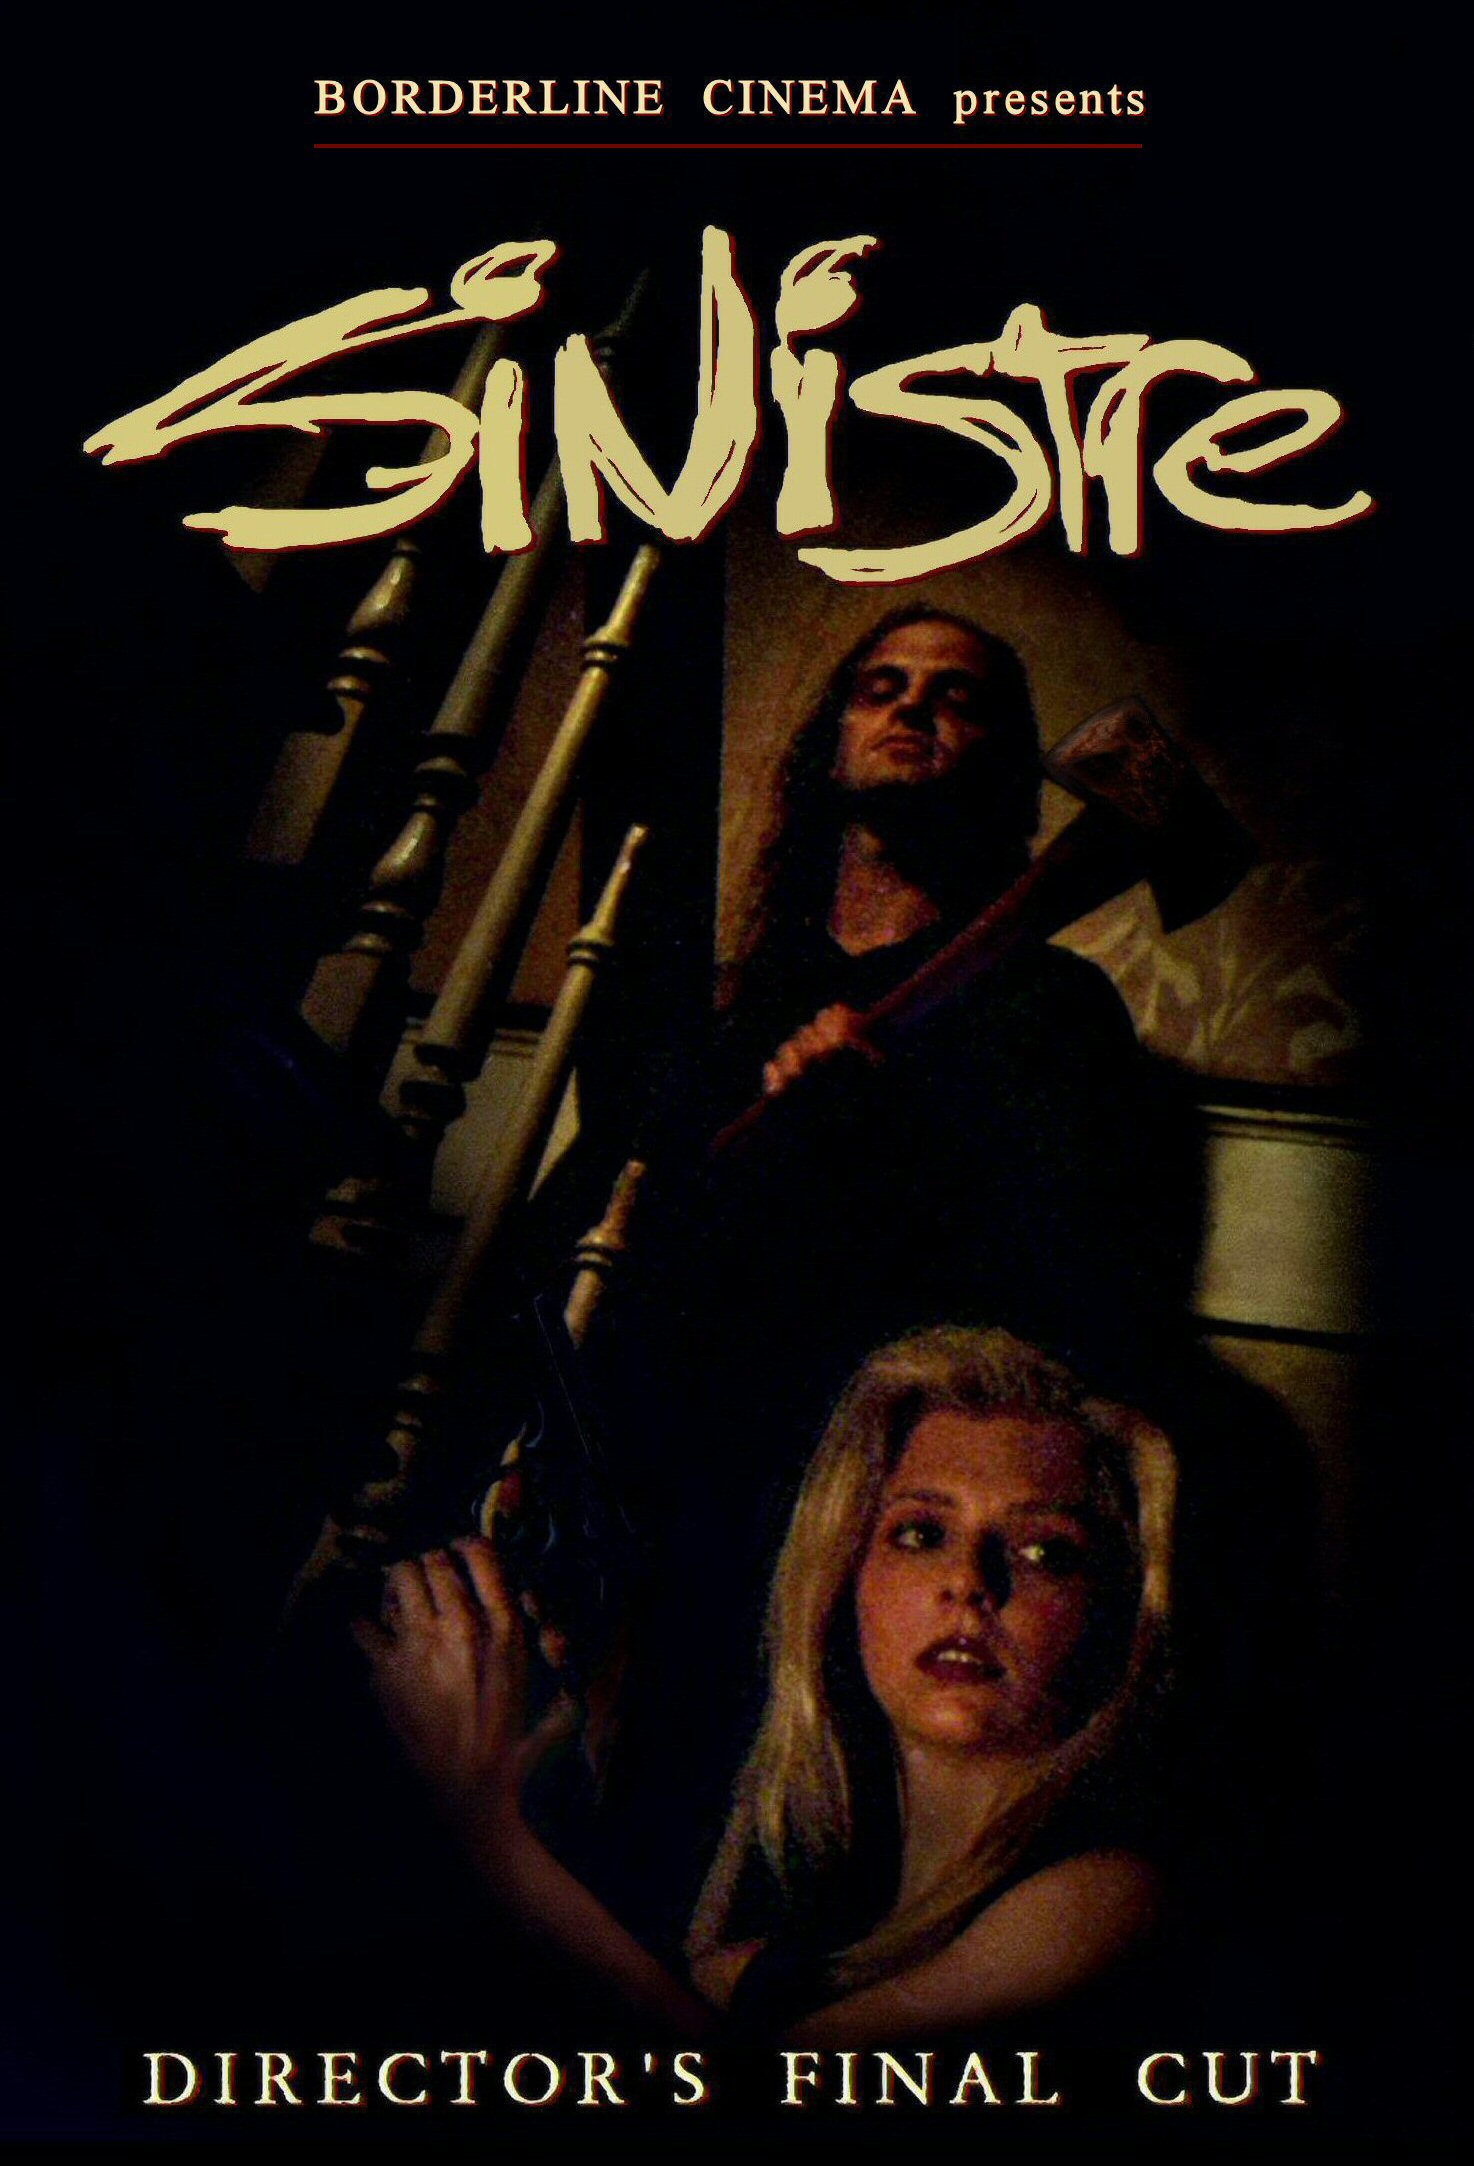 Sinistre (1996) Screenshot 3